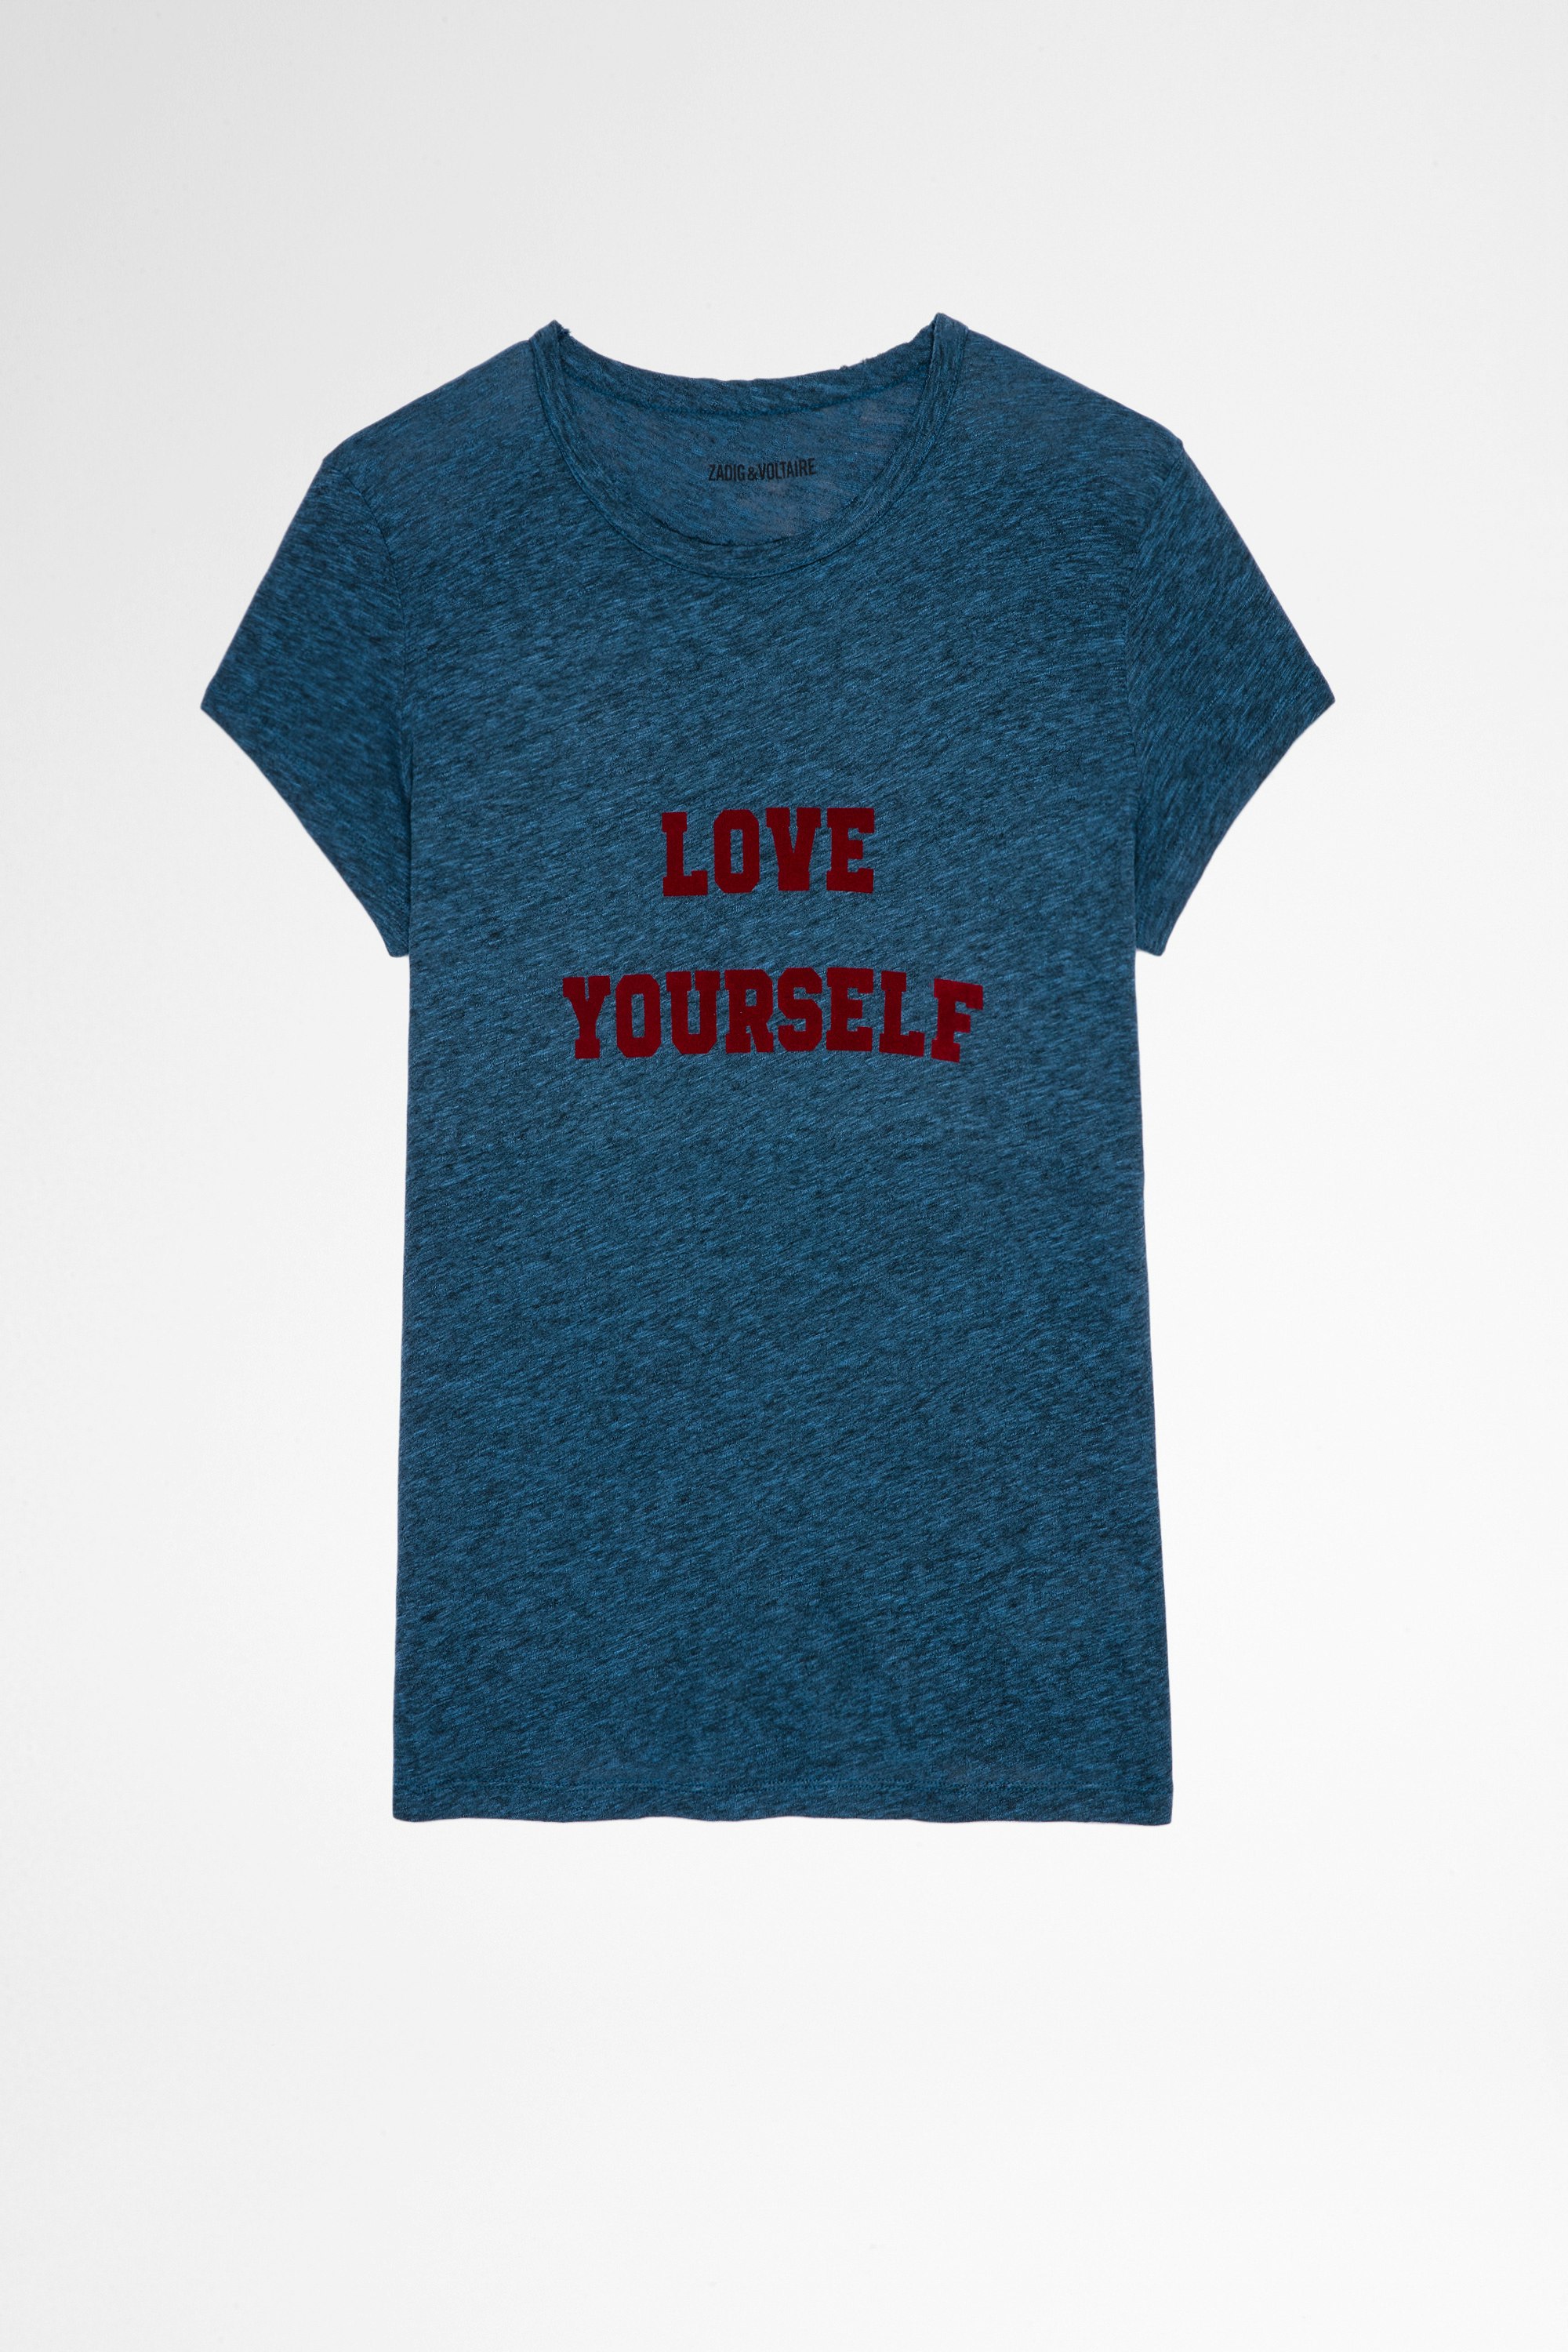 Camiseta jaspeada Walk Love Yourself Camiseta azul de algodón y viscosa con impresión Love Yourself para mujer